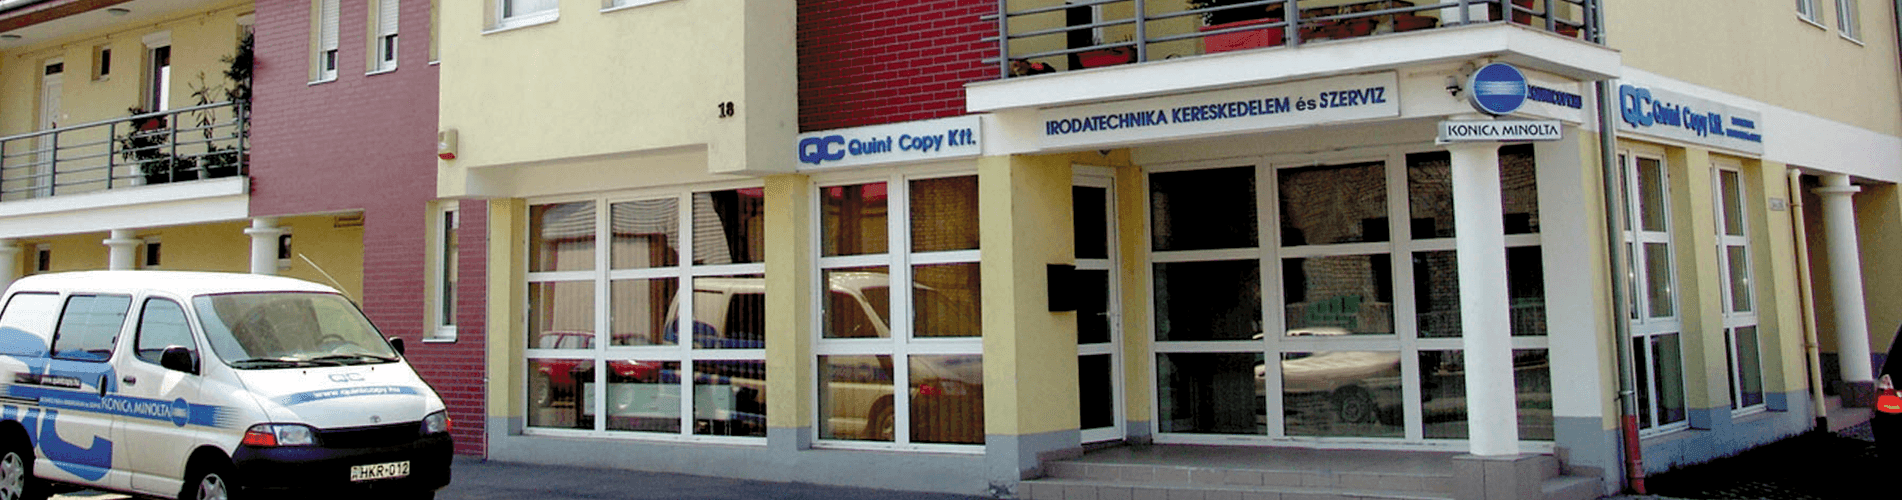 Professzionális Konica Minolta irodai eszközök teljes körű szervizgaranciával